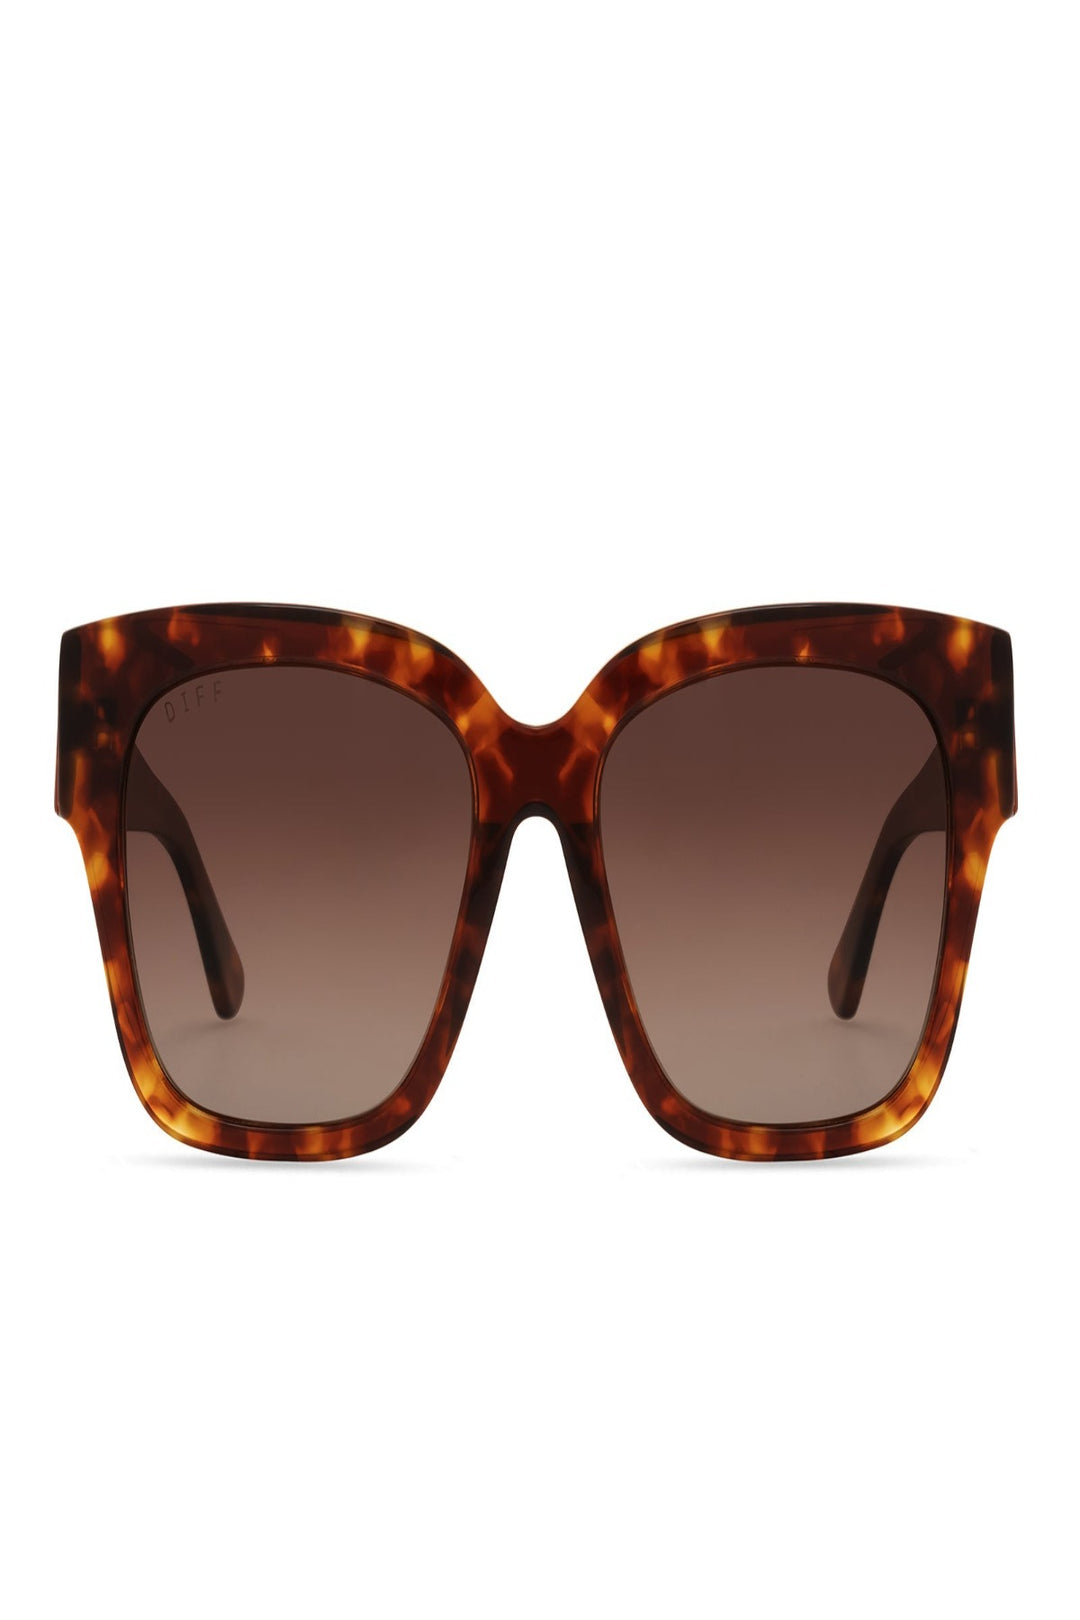 Diff Eyewear Bella II - Amber Tortoise + Brown Gradient Sunglasses